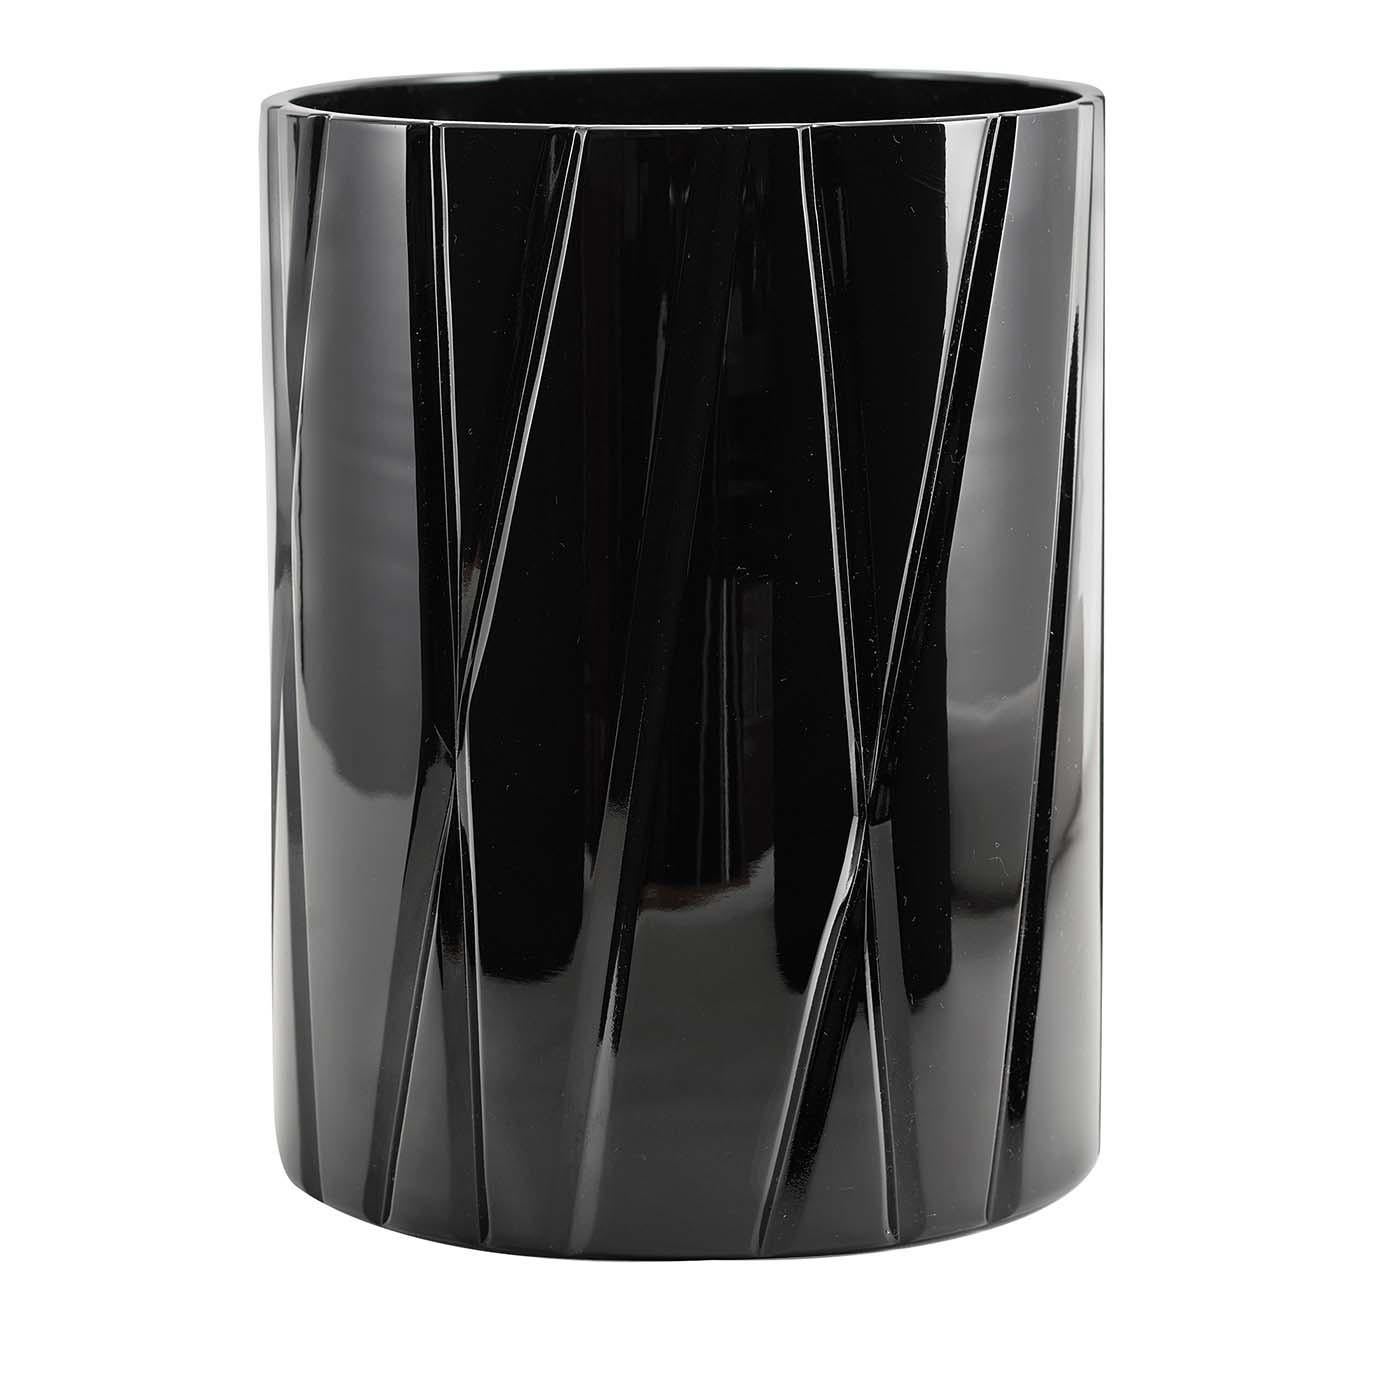 Diese schwarze Kristallvase aus der Skyline-Kollektion ist eine Übung in elegantem Minimalismus. Sie stellt in stilisierter Form die vertikale Spannung der Wolkenkratzer der modernen Stadt dar. Entweder allein, um ein modernes Interieur zu ergänzen,